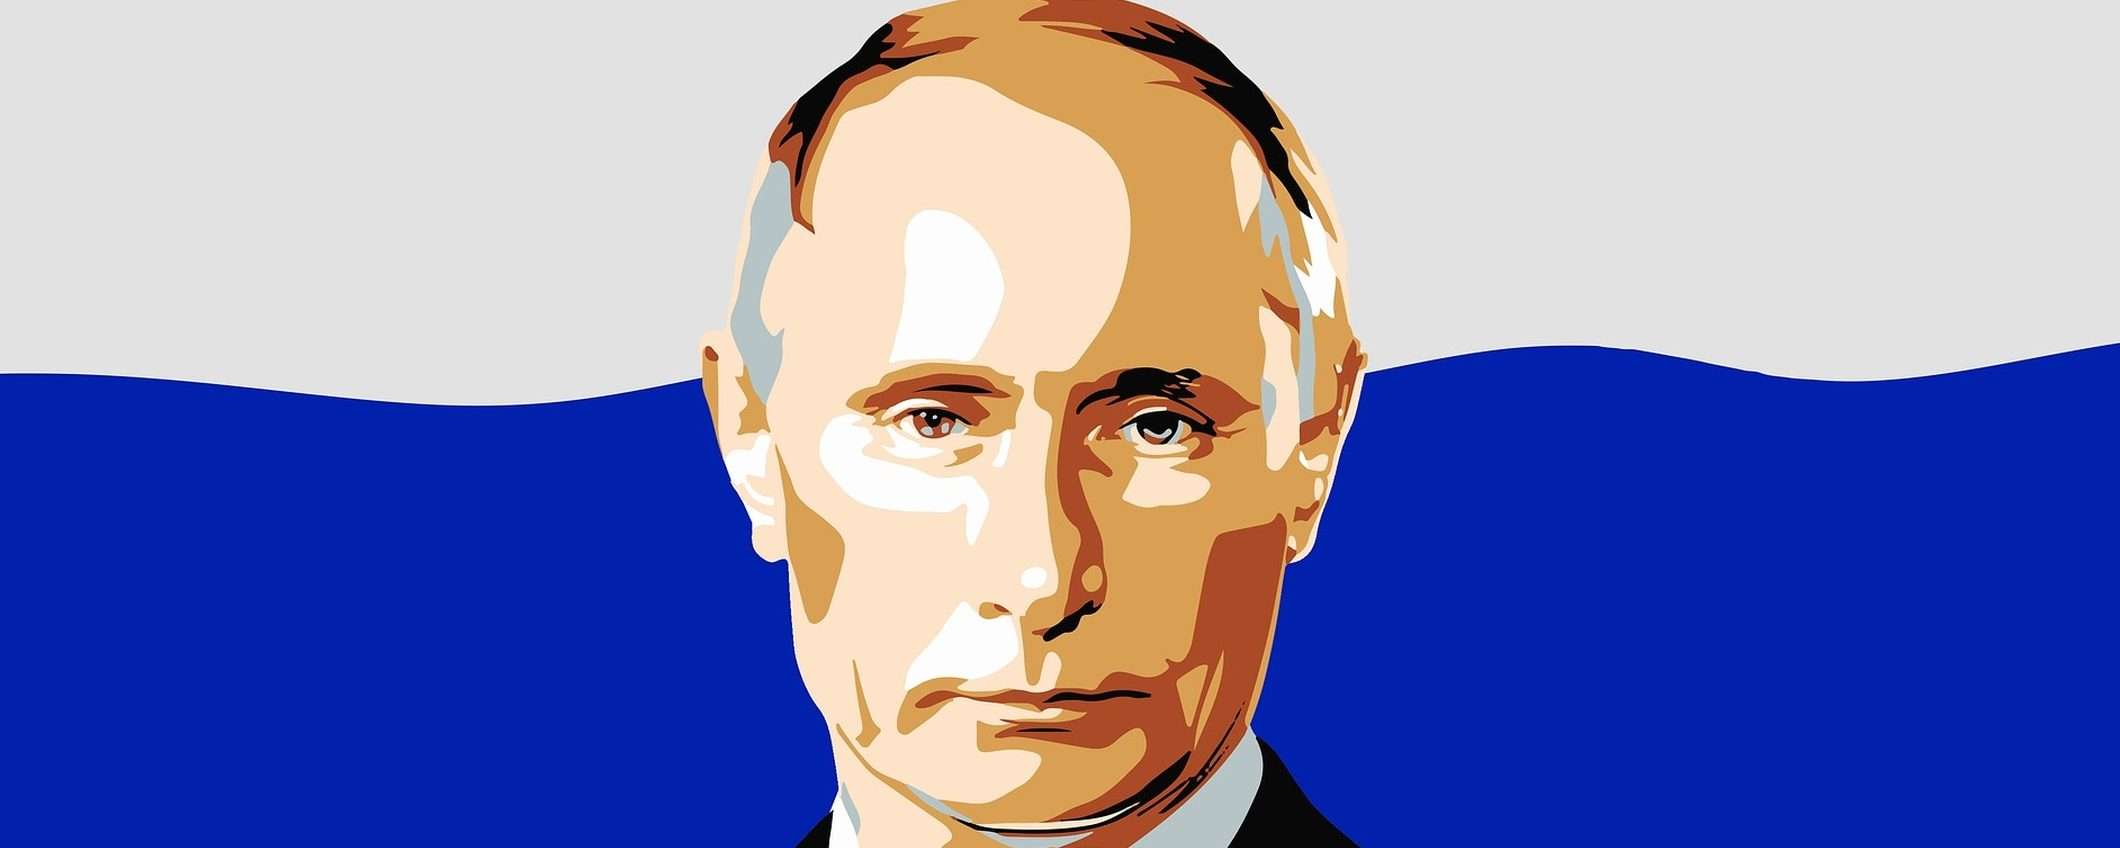 Apple e Google hanno ceduto alle intimidazioni di Putin